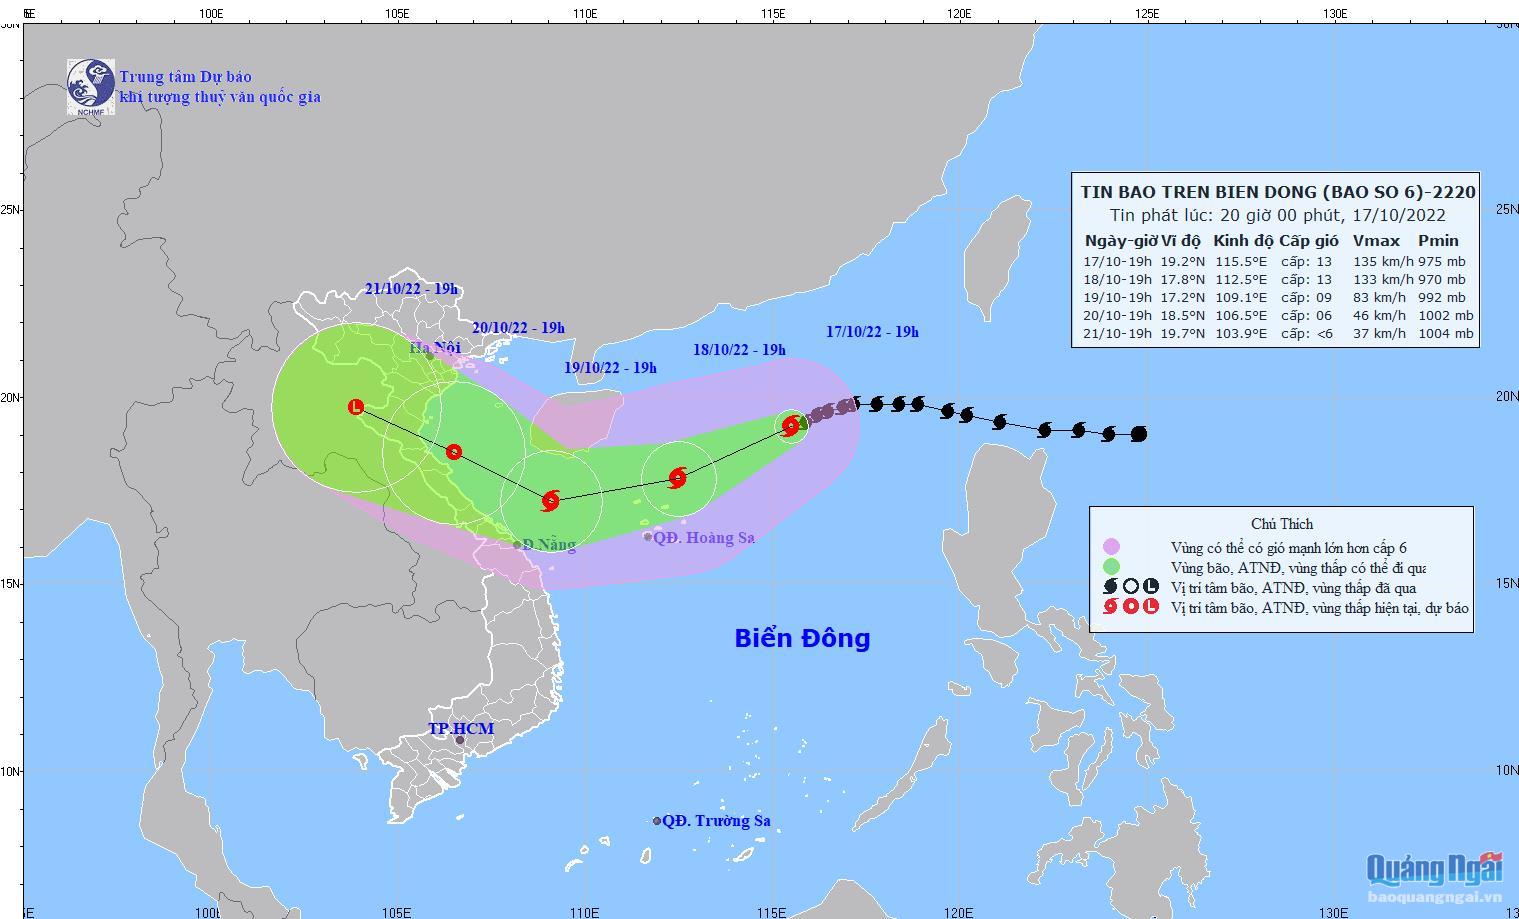 Bản đồ dư báo quỹ đạo va cường độ bã trên Biể Đông phá lúc 20h00 ngày 1 7/10/2022